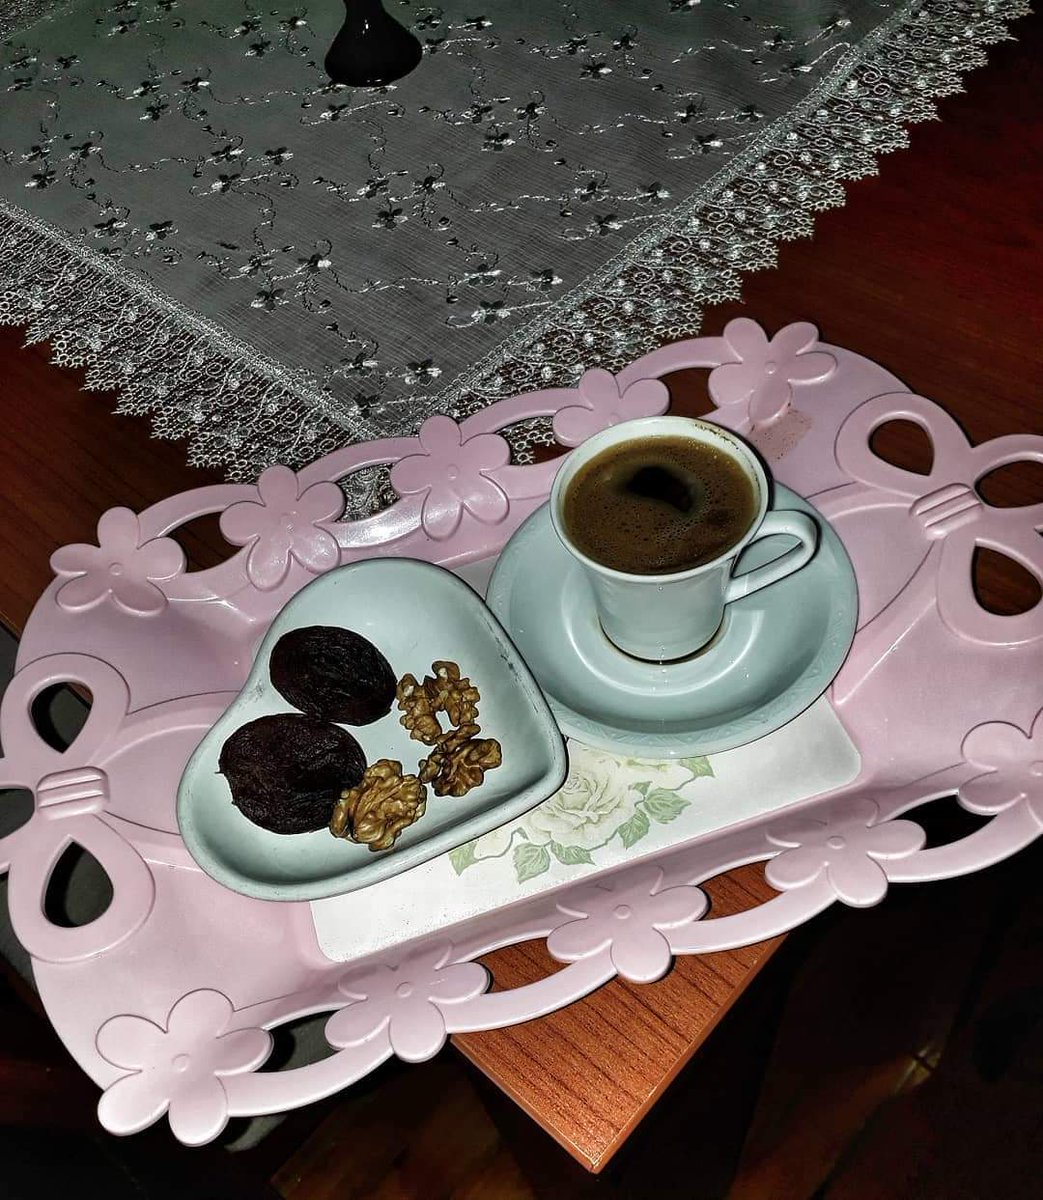 Gün aydı kahvesi 💓 #gününkahvesi #türkkahvesi #günaydıkahvesi #günaydın #diyet #diyetkahvaltı #kahvaltı #kurukayısı #ceviz